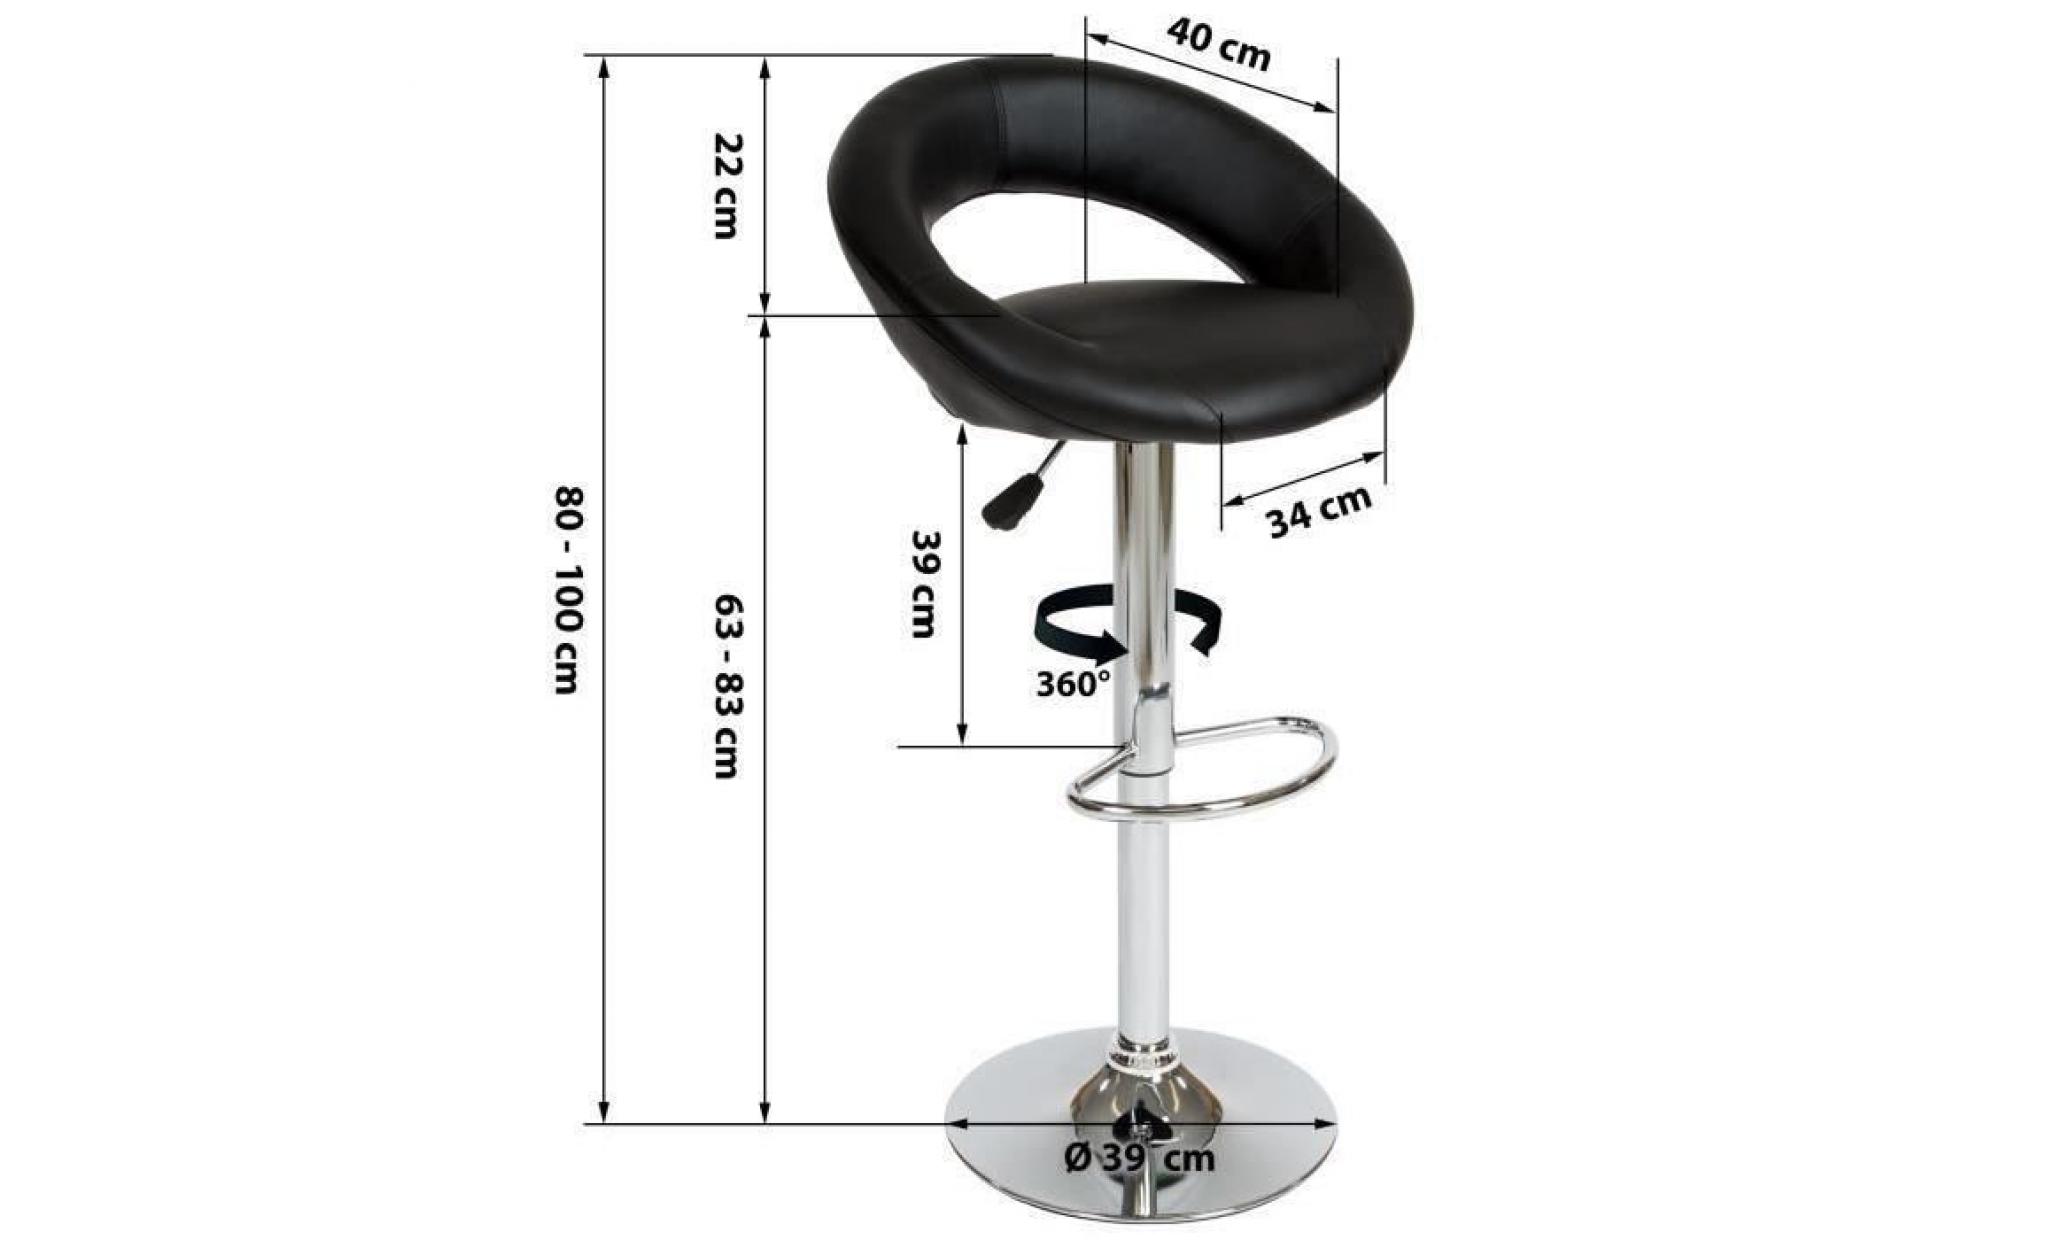 Tabouret de bar lot de 2, Tabouret de bar design, Chaise de Bar Noir TECTAKE Pivotant et réglable en Hauteur 57 cm - 77 cm - New pas cher